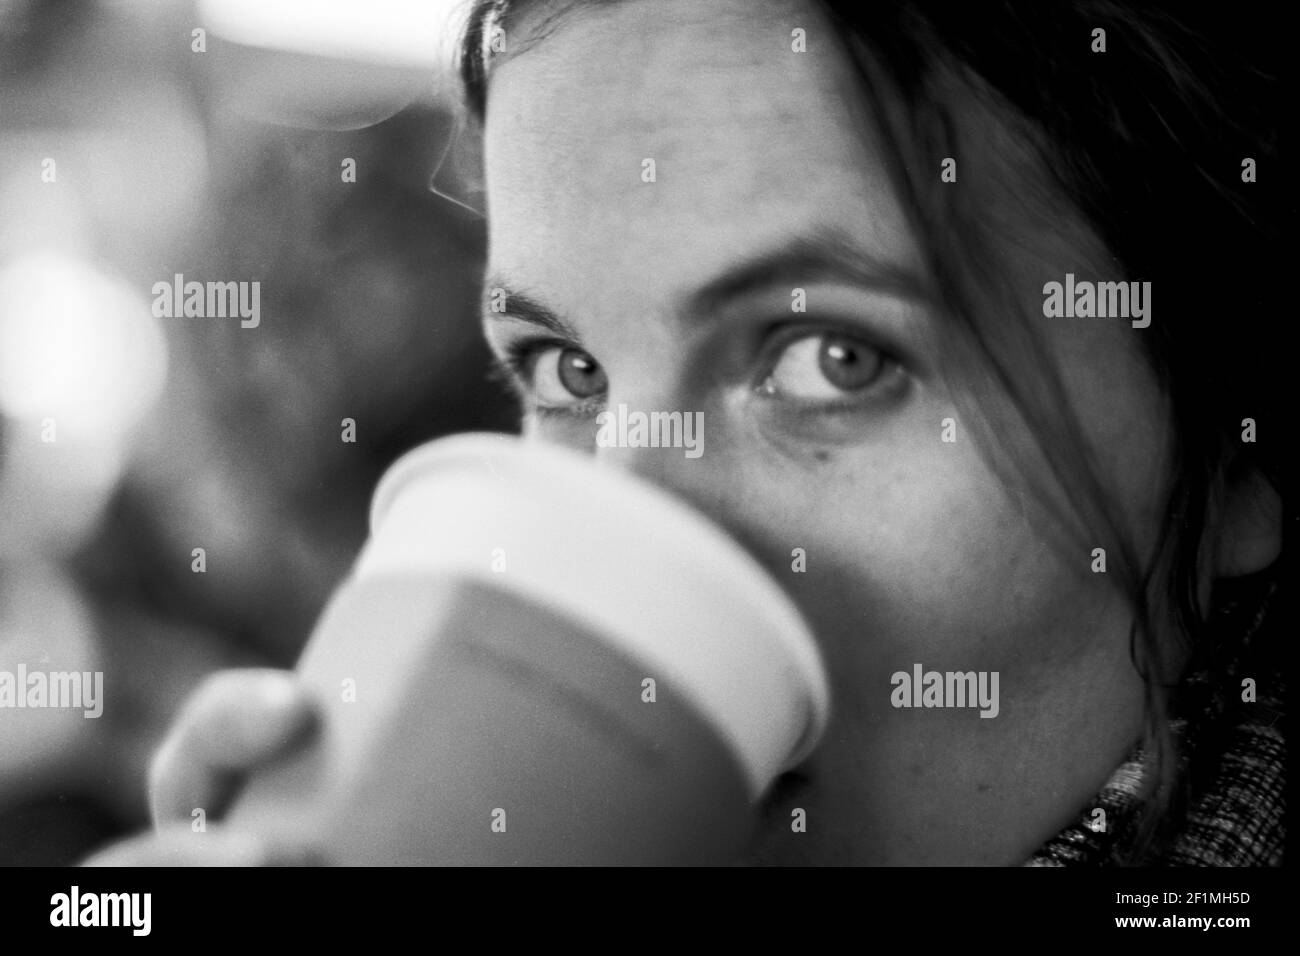 Rotterdam, Niederlande. Porträt einer erwachsenen, kaukasischen Frau in Schwarz & Weiß. Aufgenommen auf analogem Kodak T-Max-Film. Stockfoto